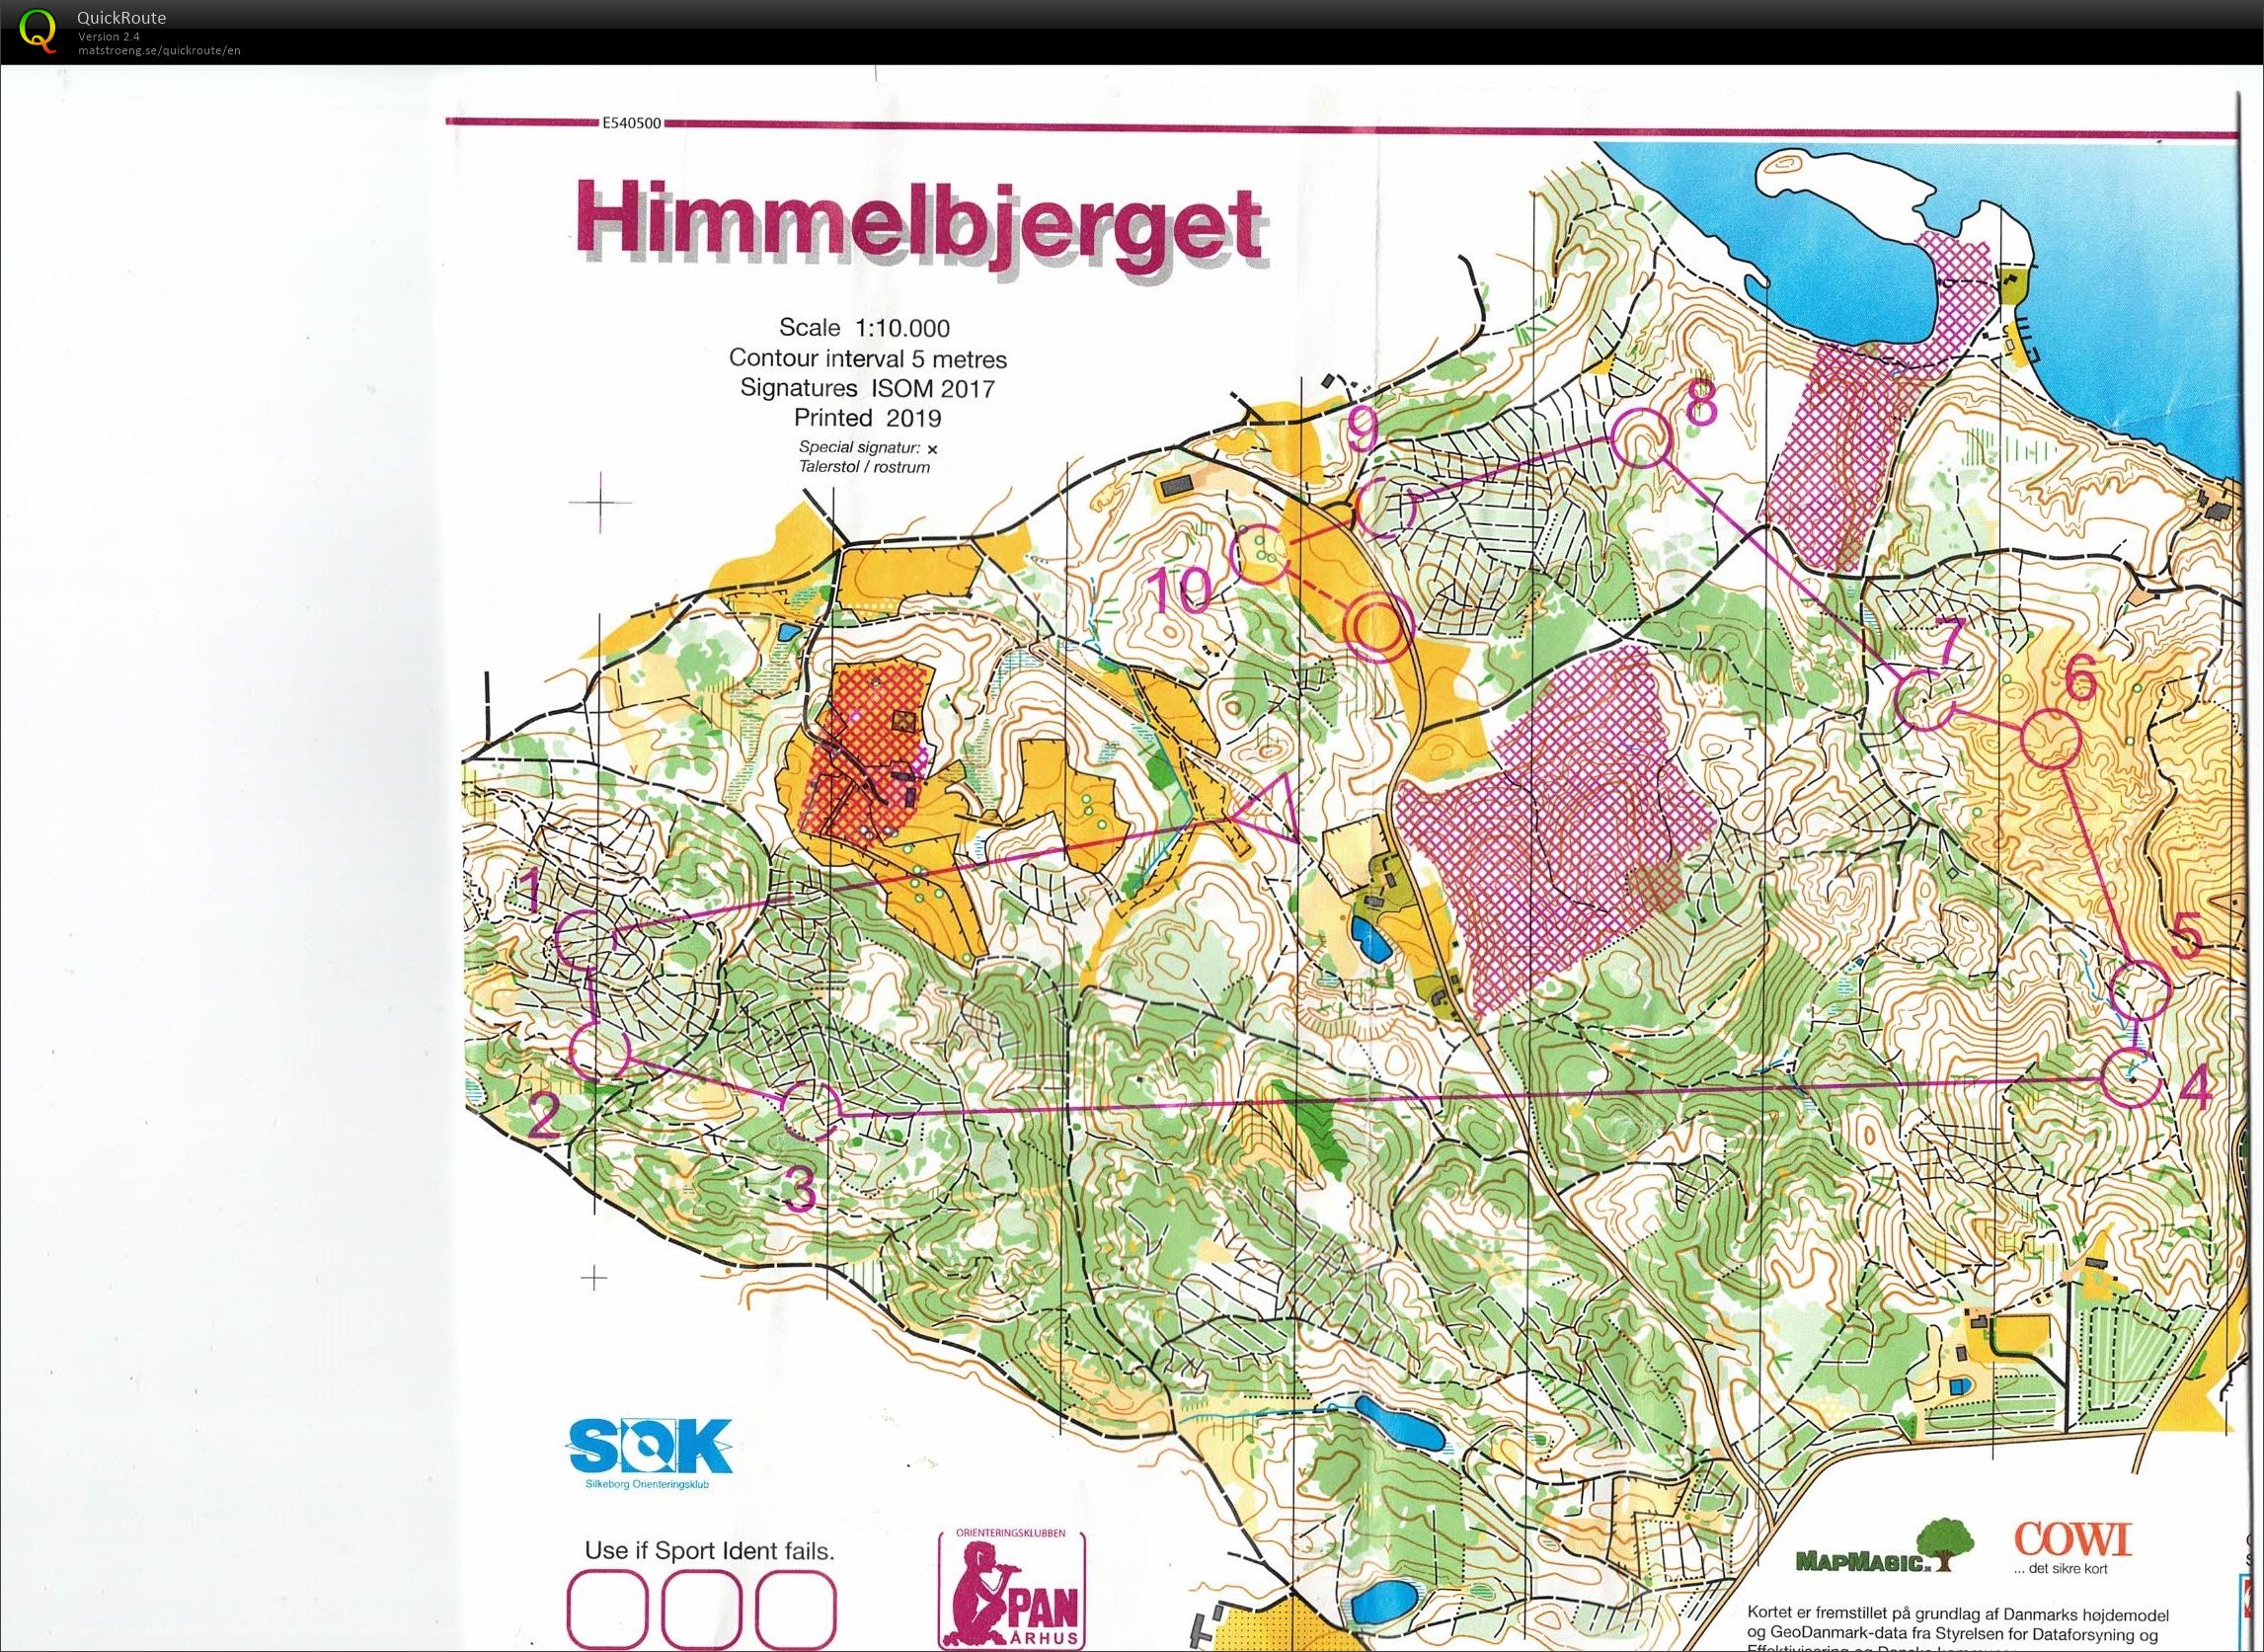 Himmelbjerget, JWOC testløb, Bane Åben 4, Pia Gade, 090619 (2019-06-09)